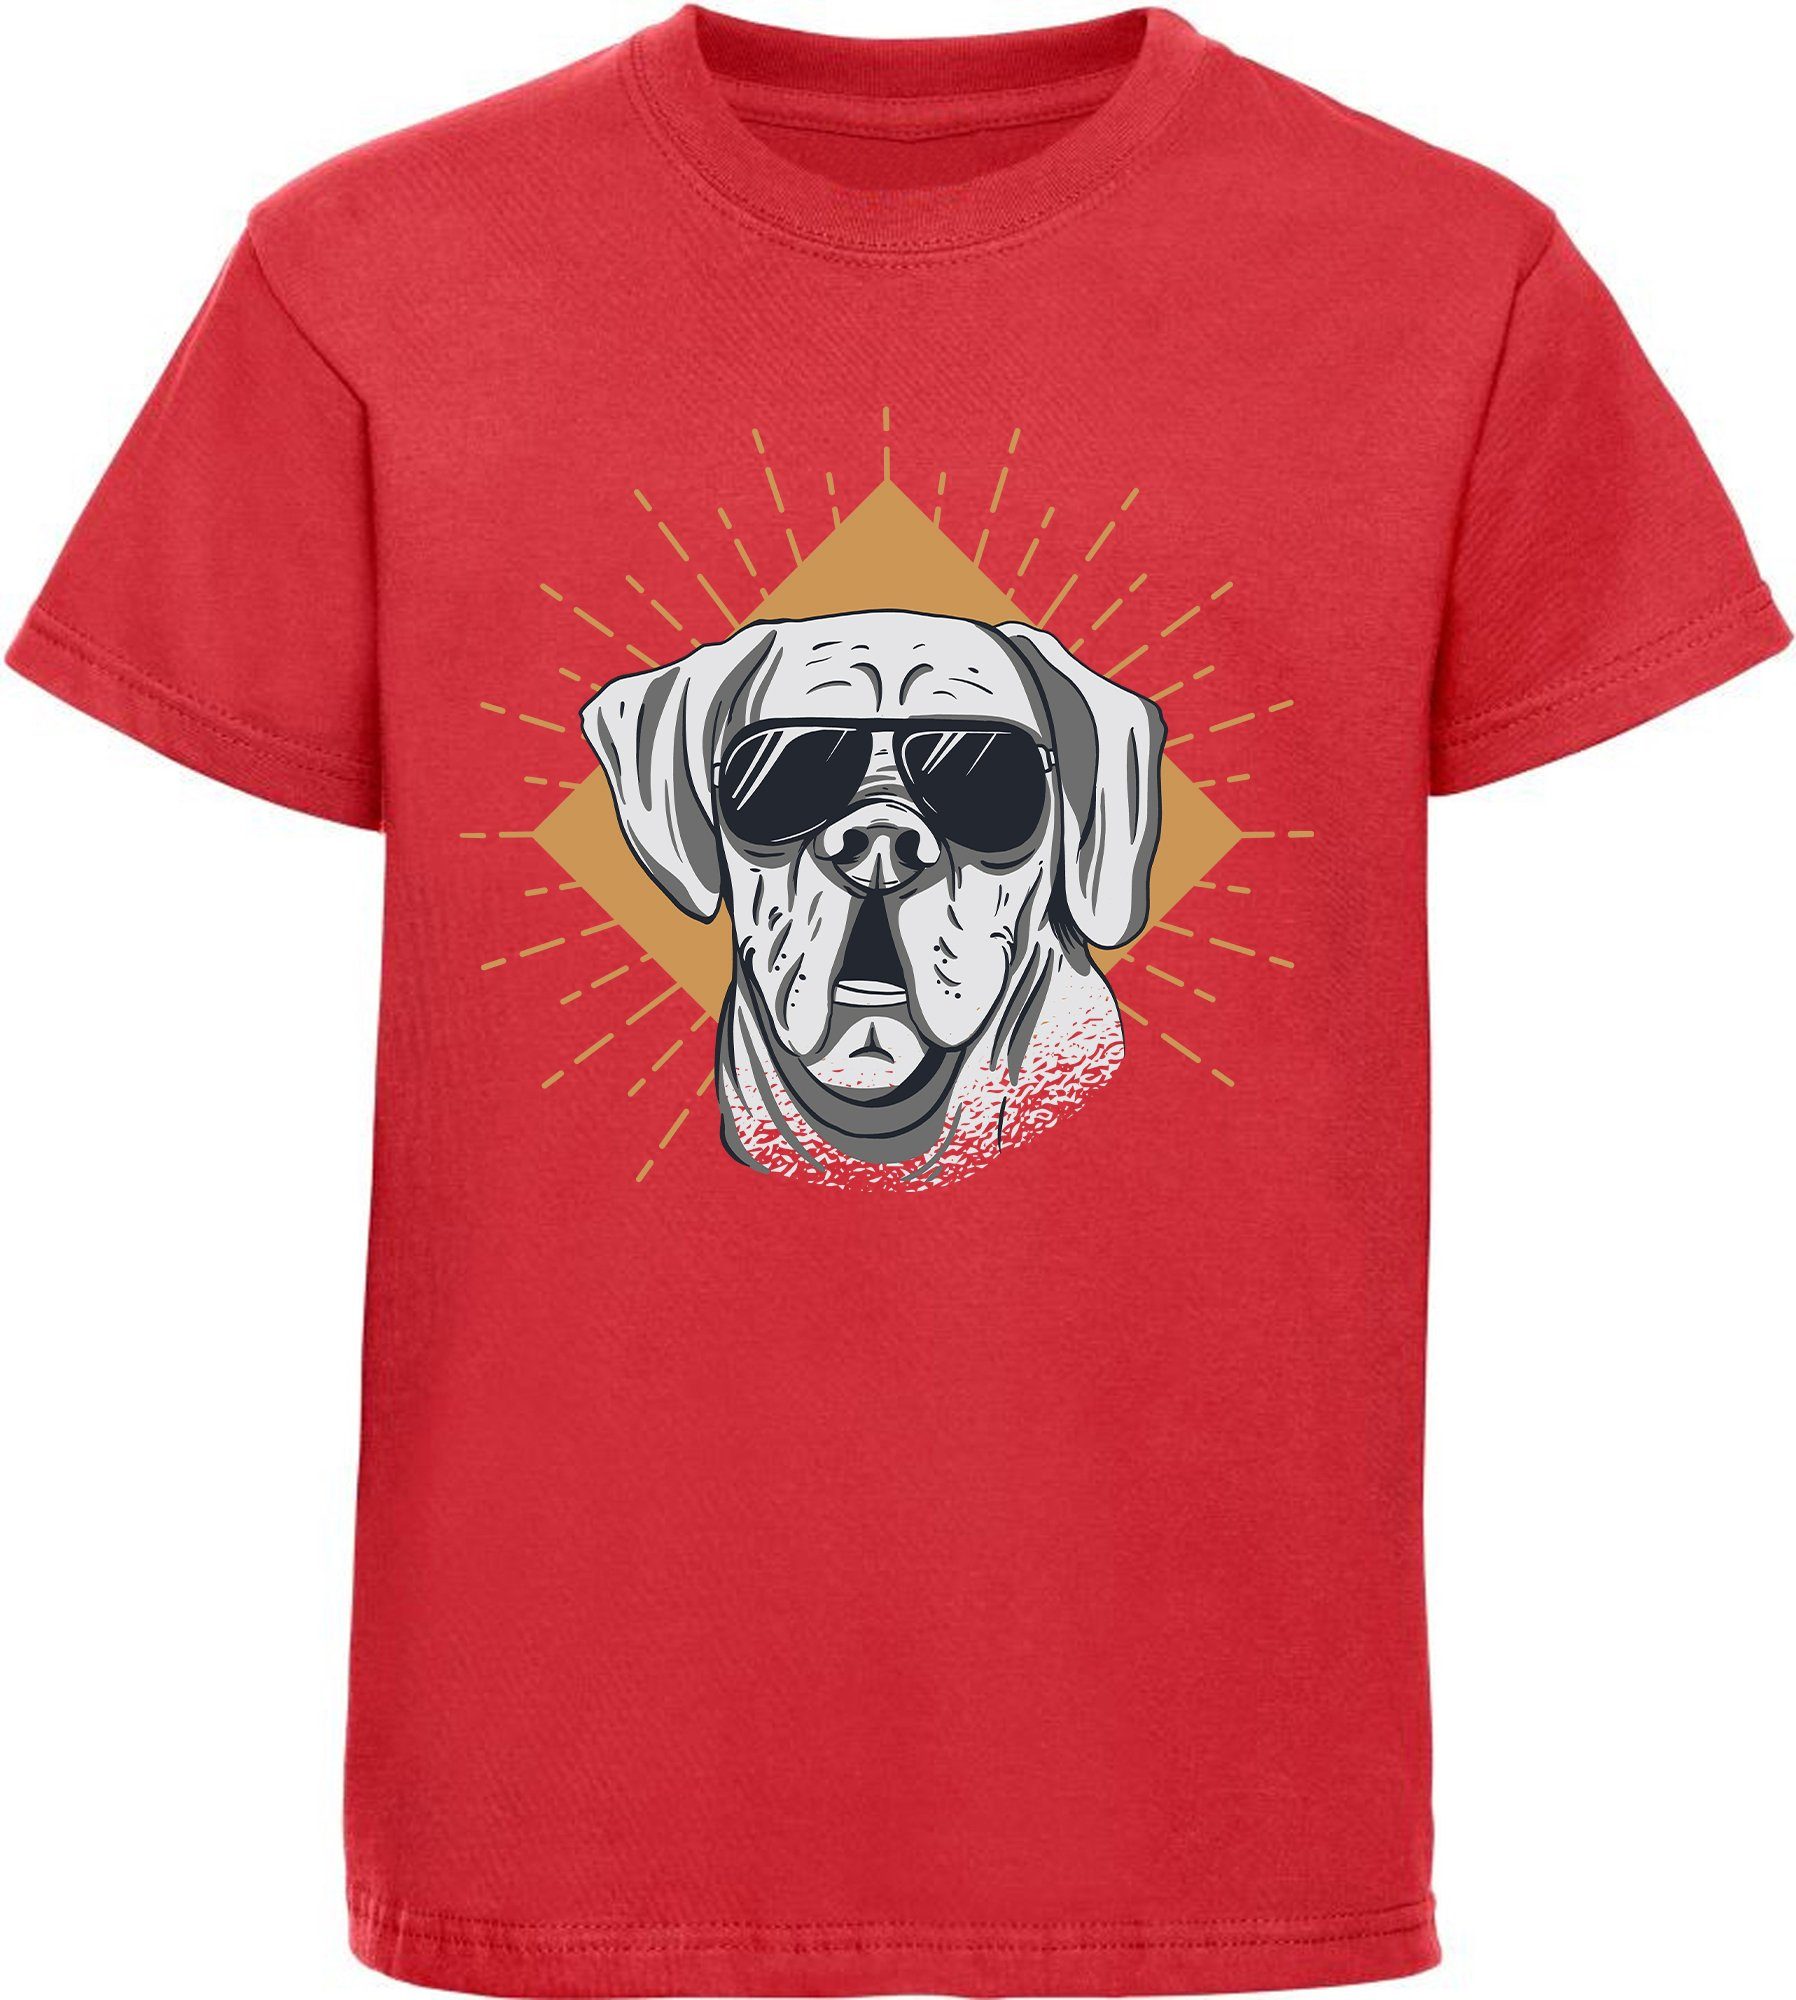 MyDesign24 Print-Shirt bedrucktes Kinder Hunde T-Shirt - Cooler Hund mit Sonnenbrille Baumwollshirt mit Aufdruck, i224 rot